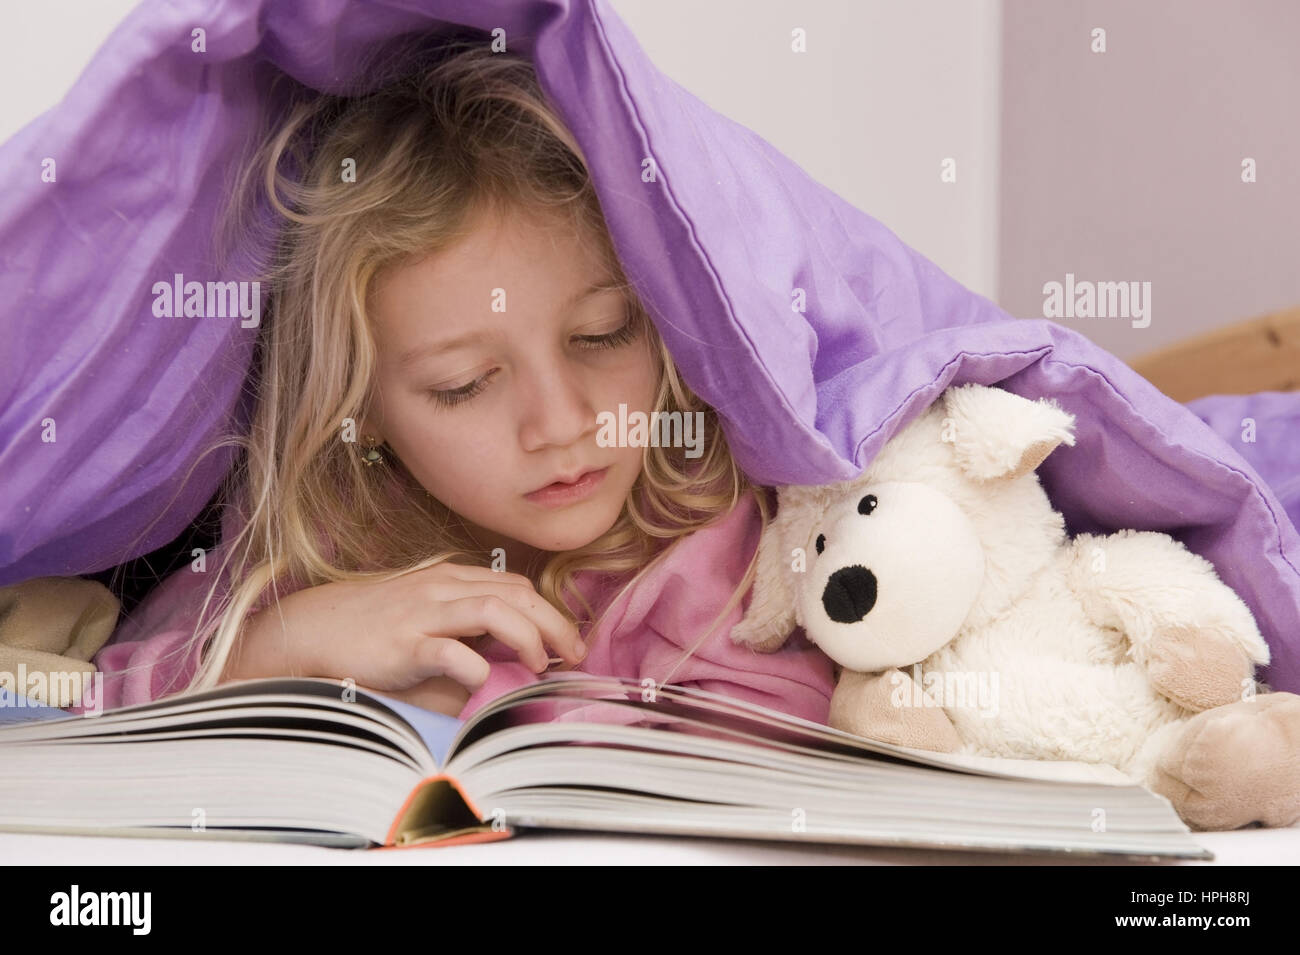 Maedchen liegt unter der Bettdecke und liest ein Buch - girl lying under bed cover reading a book, Model released Stock Photo